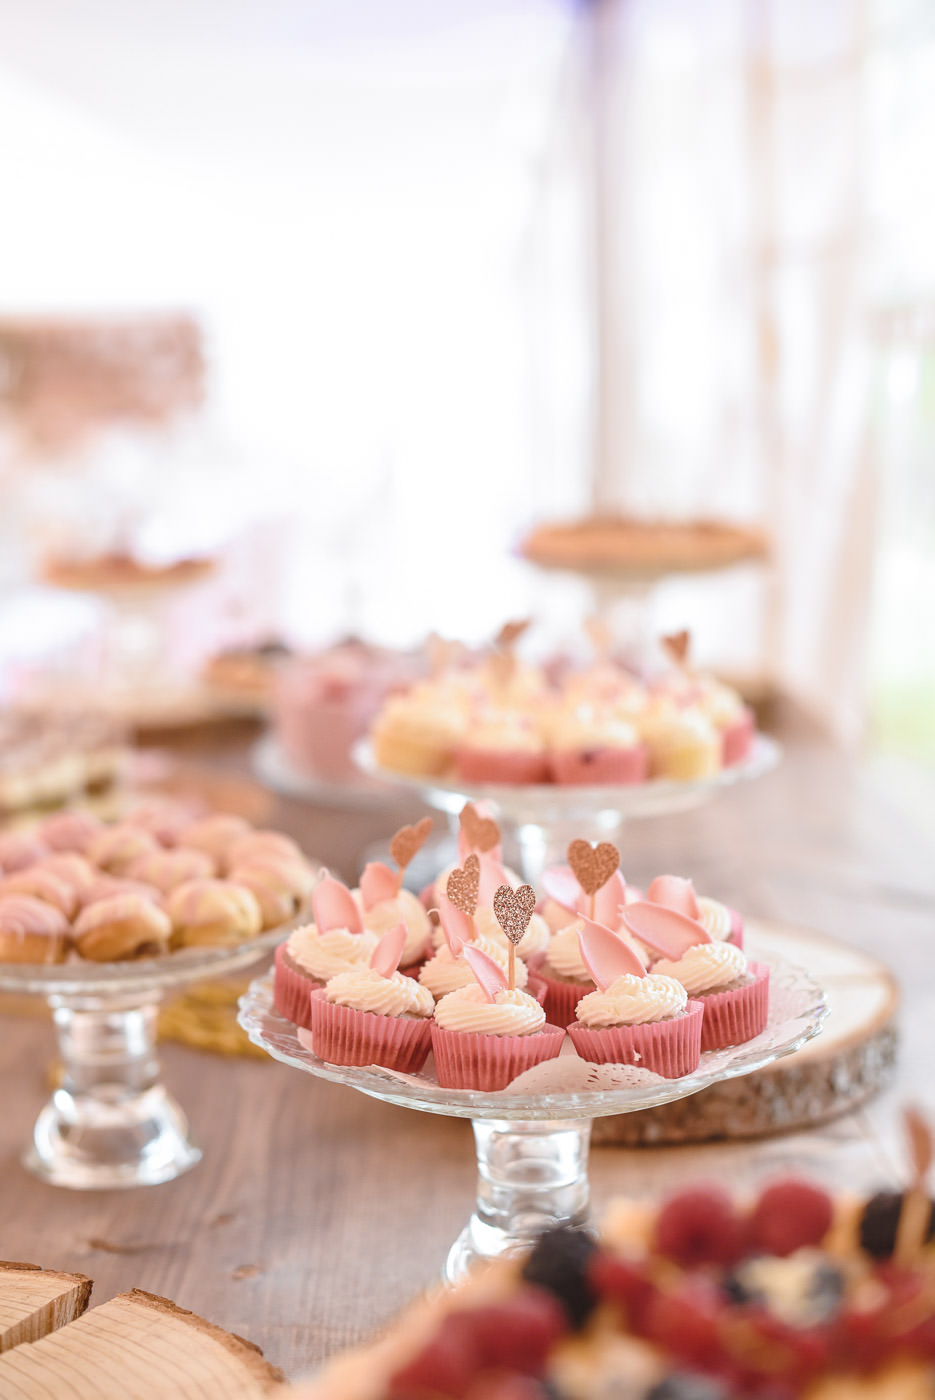 Susan&Sis decor – svadobna vyzdoba, dekorovanie- svadba v bielom stane- ruzova jemna vyzdoba, ruze, vela kvetov, ruzove stuhy, ruzovy svadobny candy bar, cukriky, lizatka, cup cakes